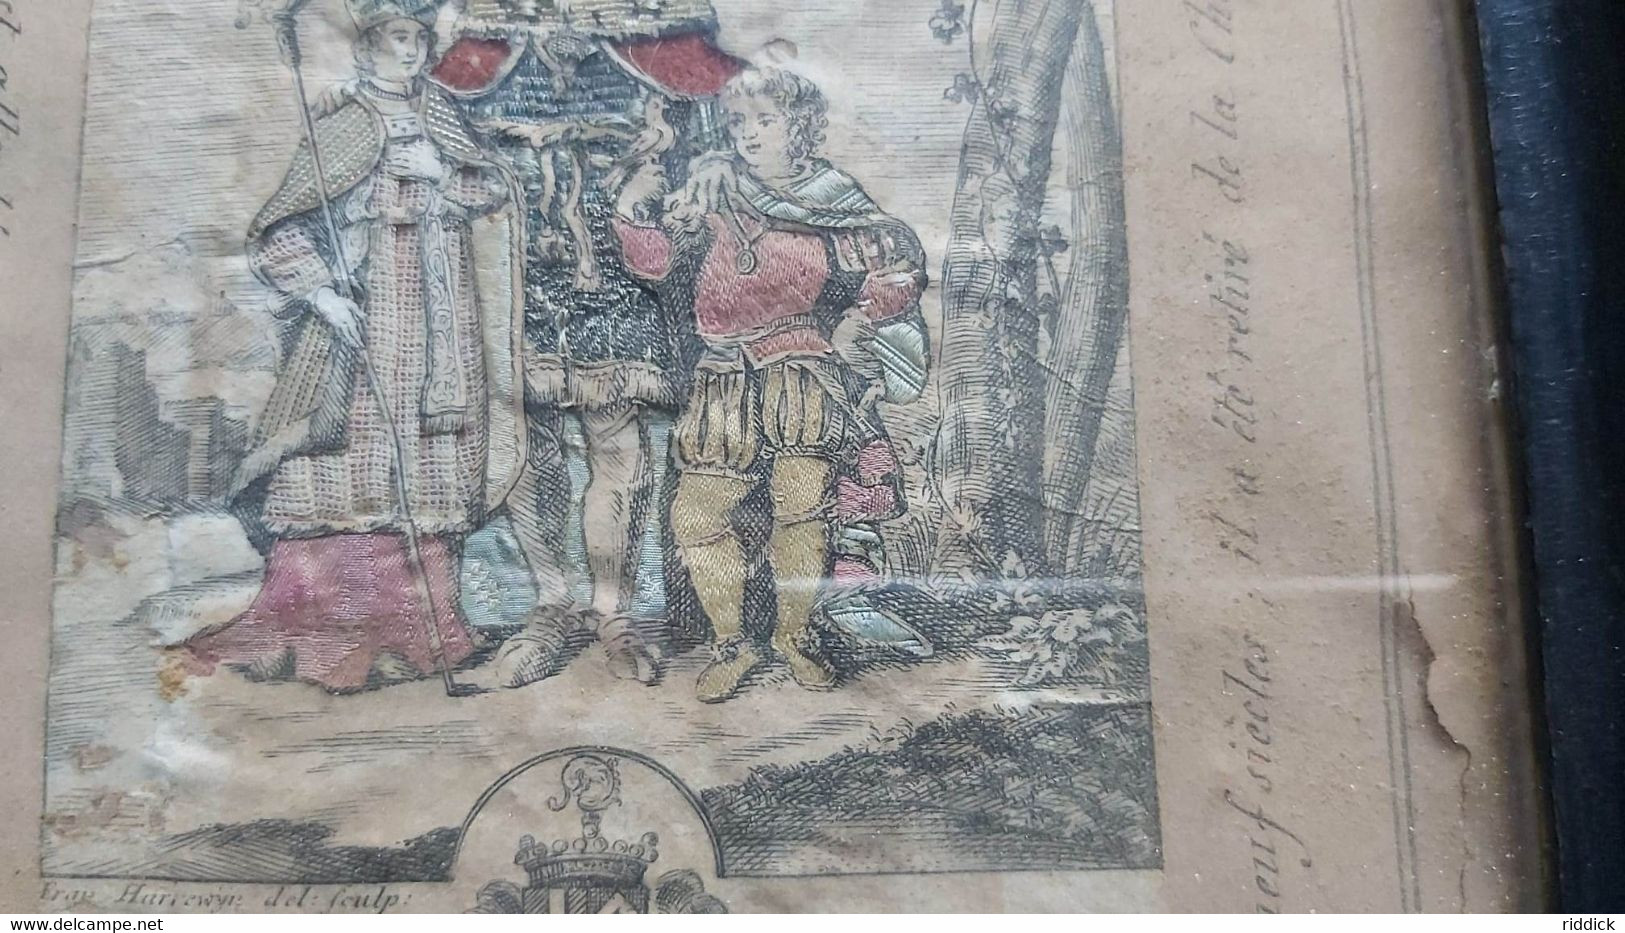 Spectaculaire Image Avt 1750 Papier Tissus St Vincent De Soignies LANDRICUS LANDELINUS VINCENTIUS + Relique HARREWIJN - Devotion Images